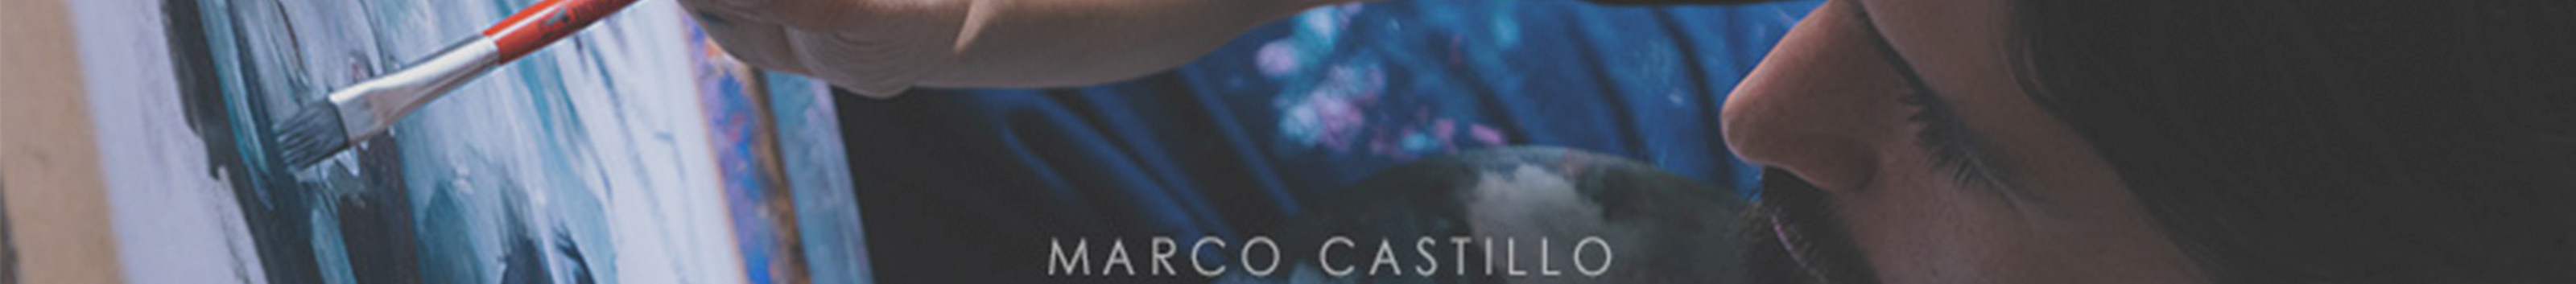 Marco Castillo's profile banner